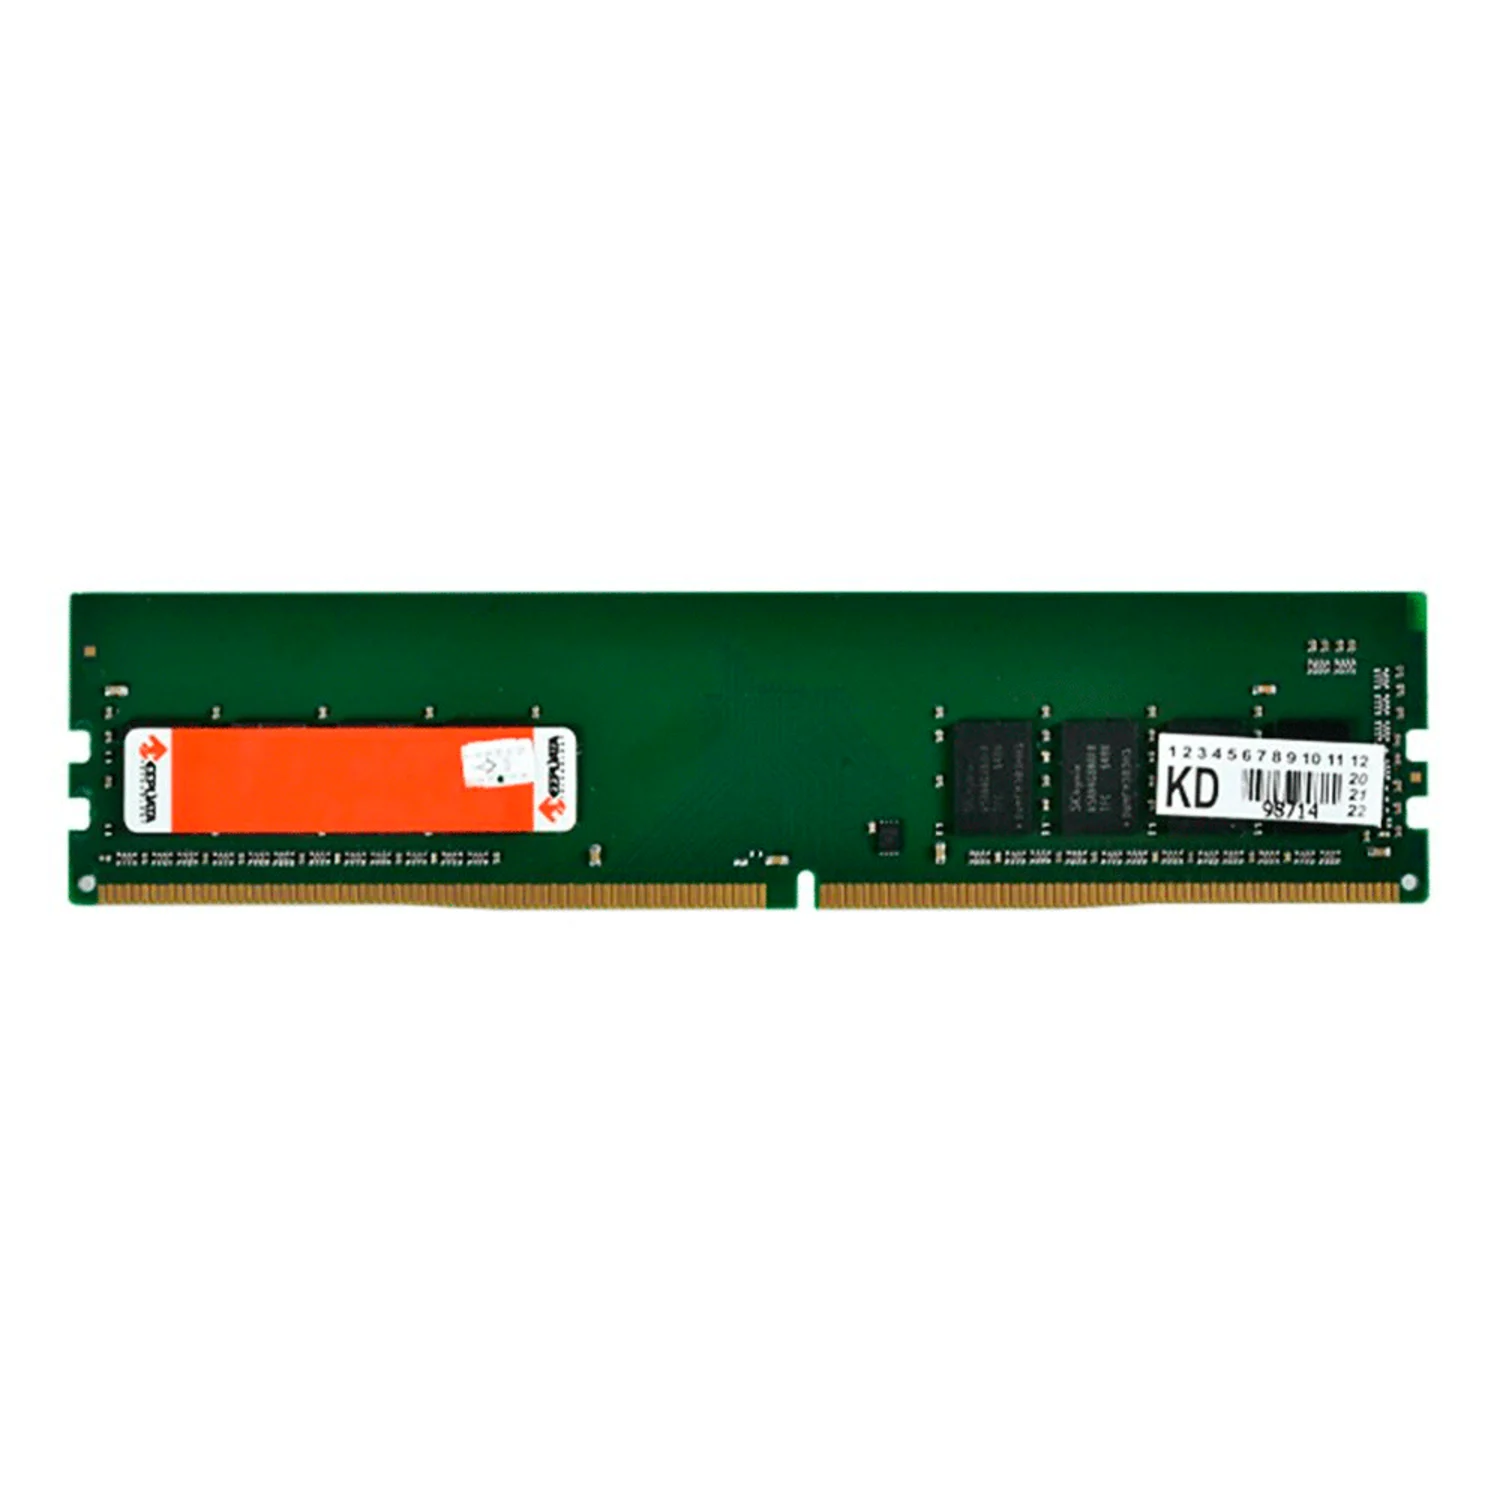 Memória RAM Keepdata KD32N22/8G 8GB DDR4 3200